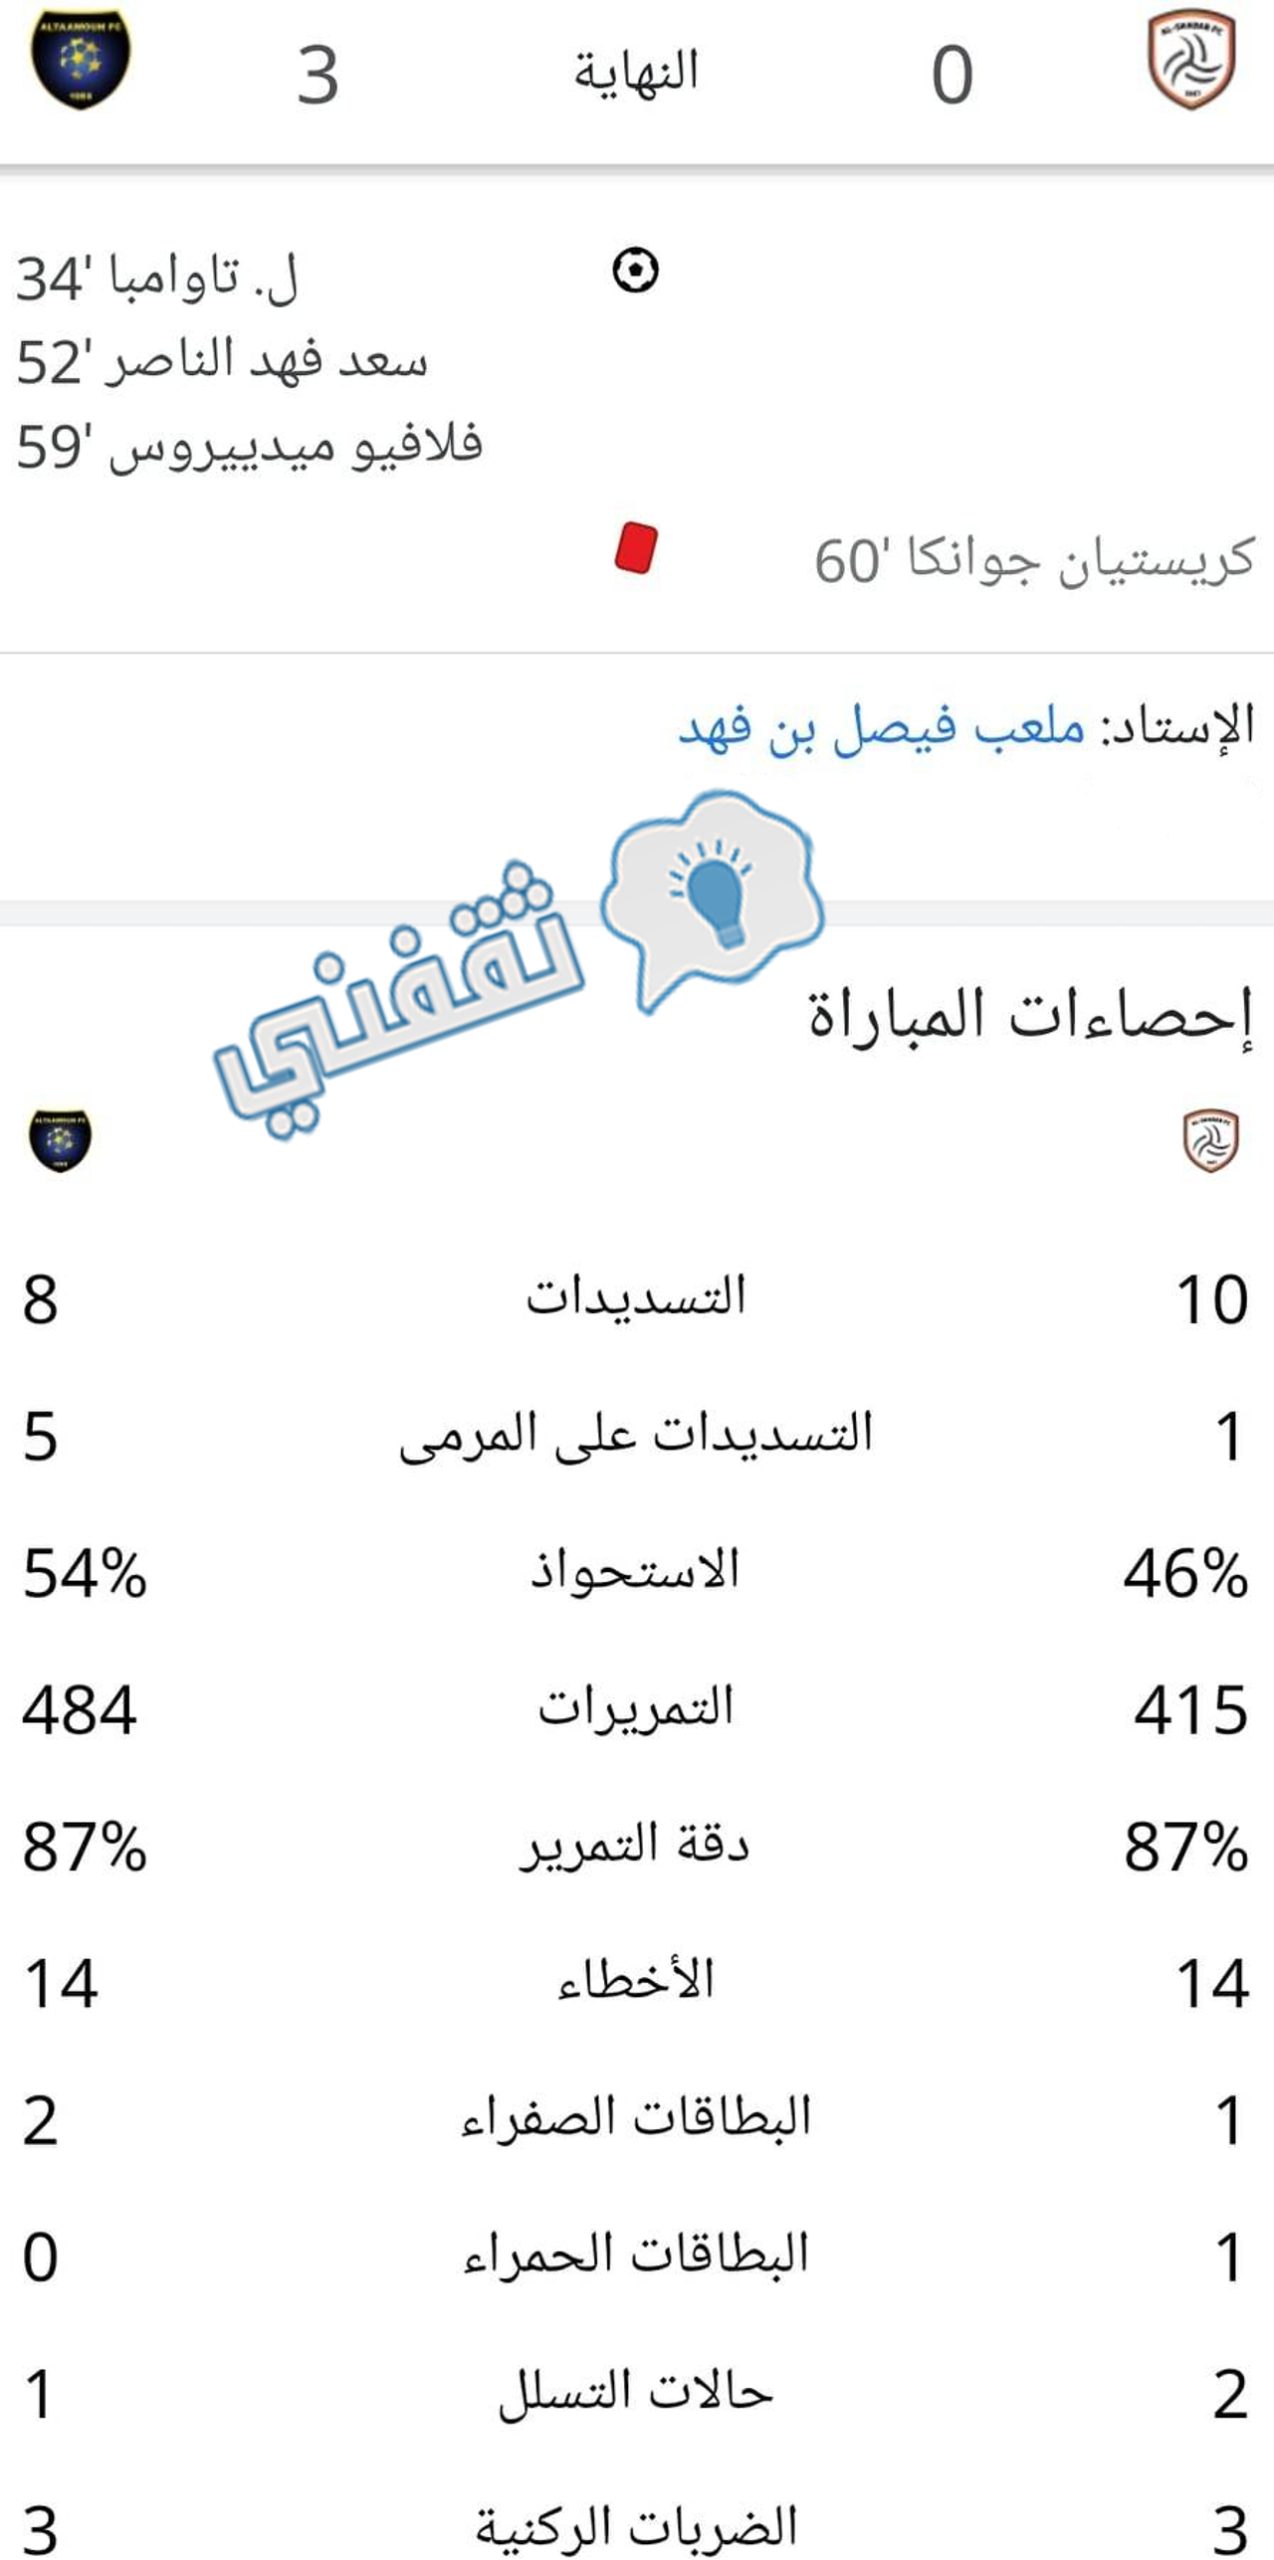 إحصائيات مباراة الشباب والتعاون في دوري المحترفين السعودي (دوري روشن)